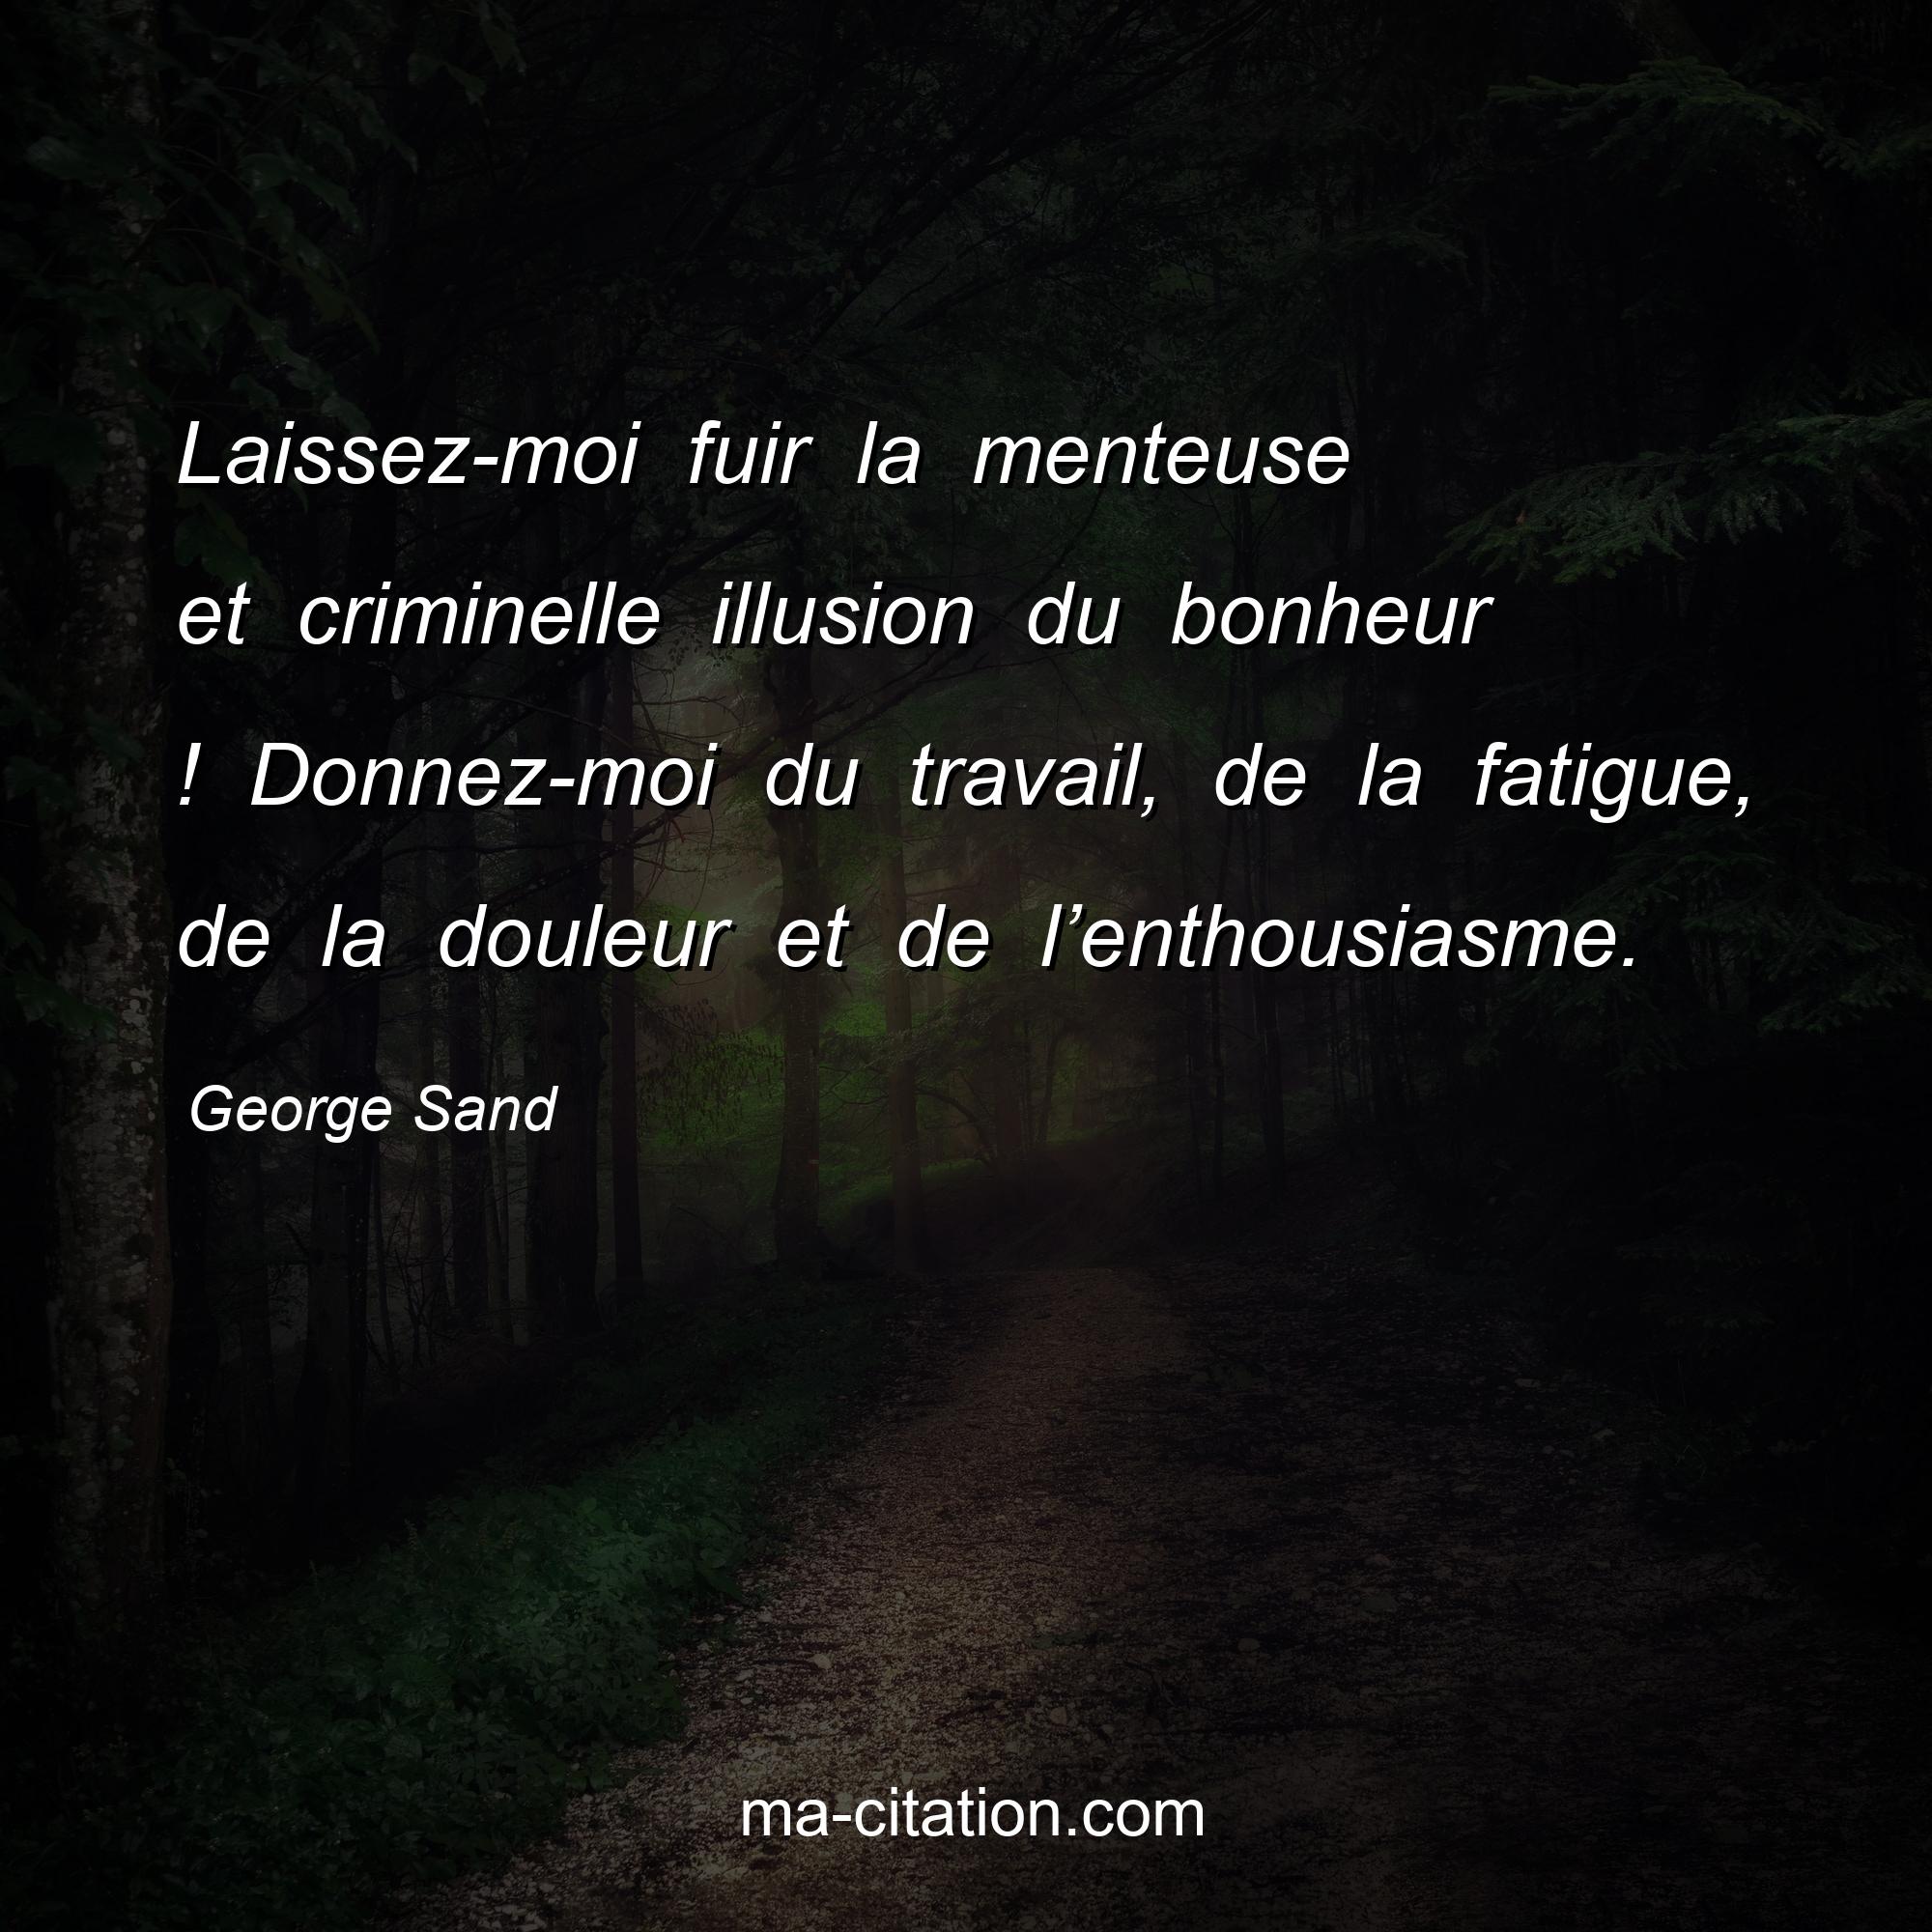 George Sand : Laissez-moi fuir la menteuse et criminelle illusion du bonheur ! Donnez-moi du travail, de la fatigue, de la douleur et de l’enthousiasme.